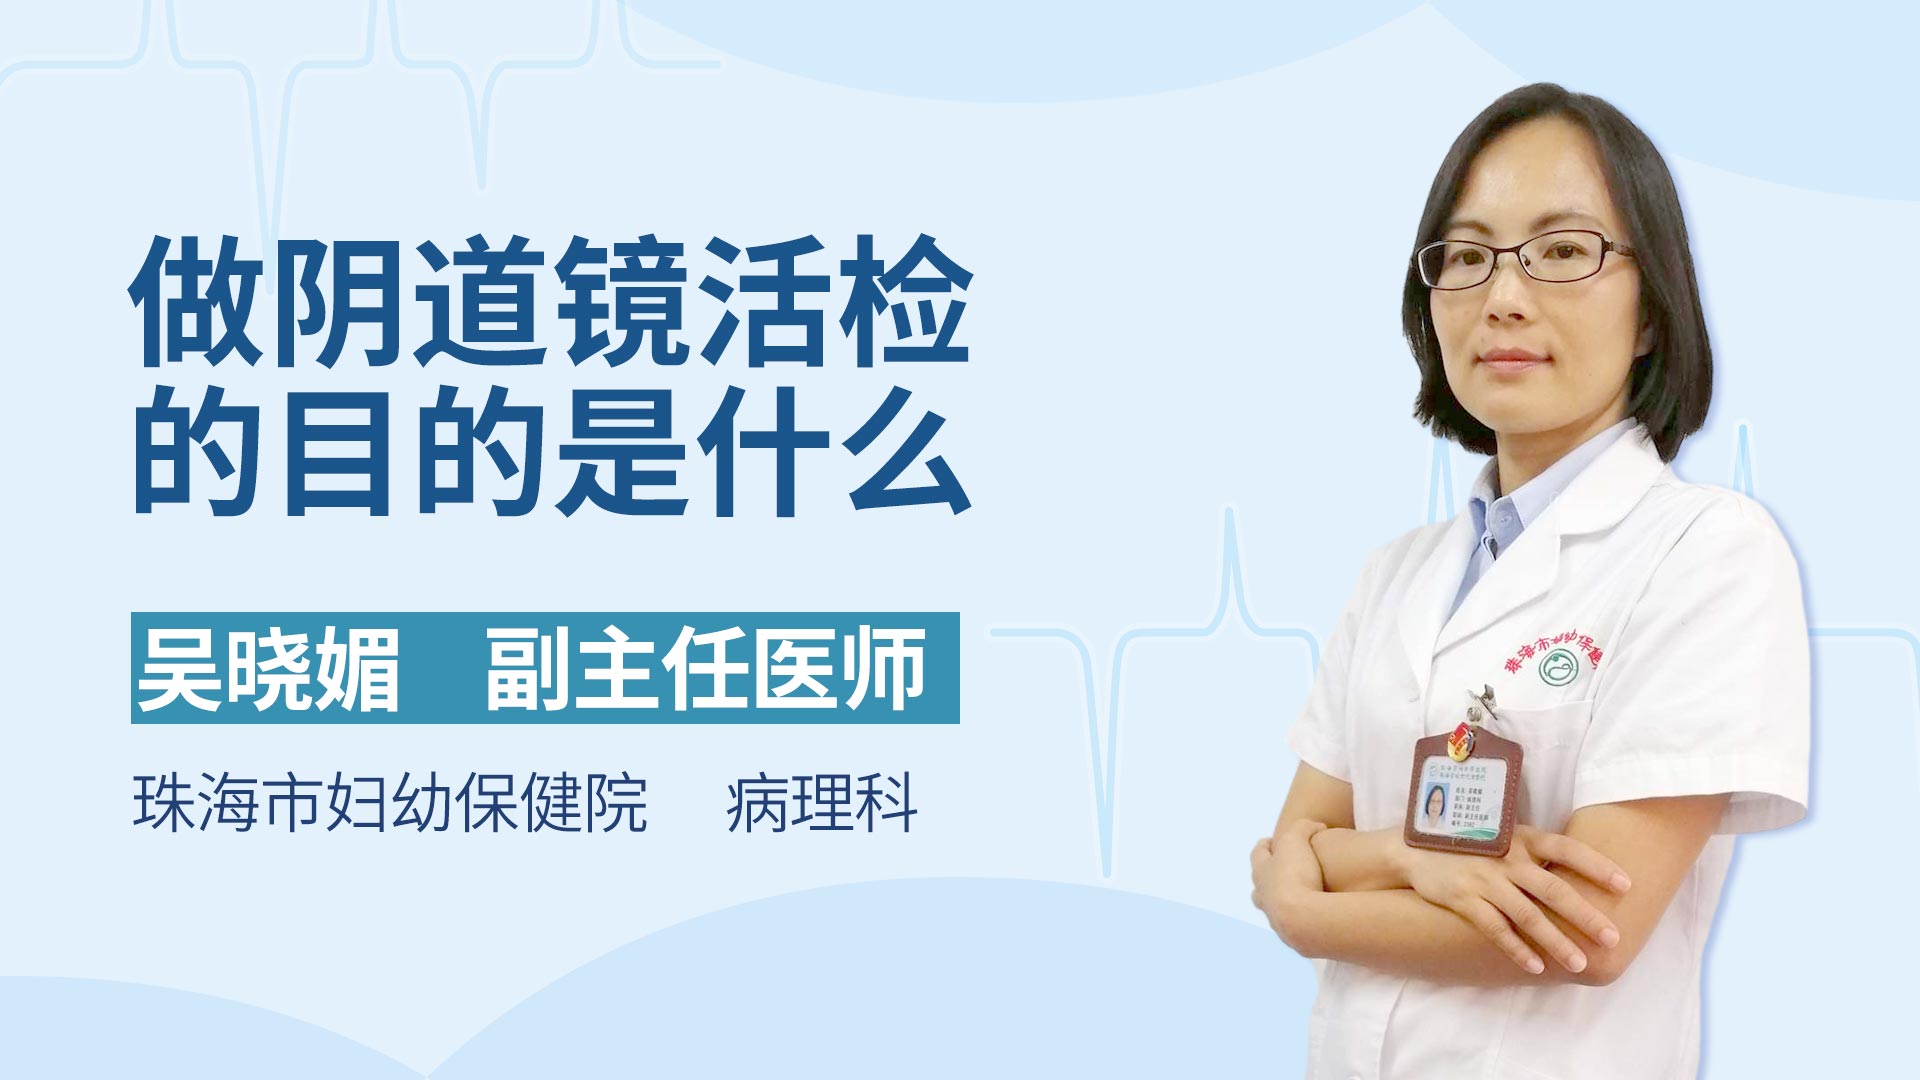 V1 / V2 电子阴道镜-广州三瑞医疗器械有限公司